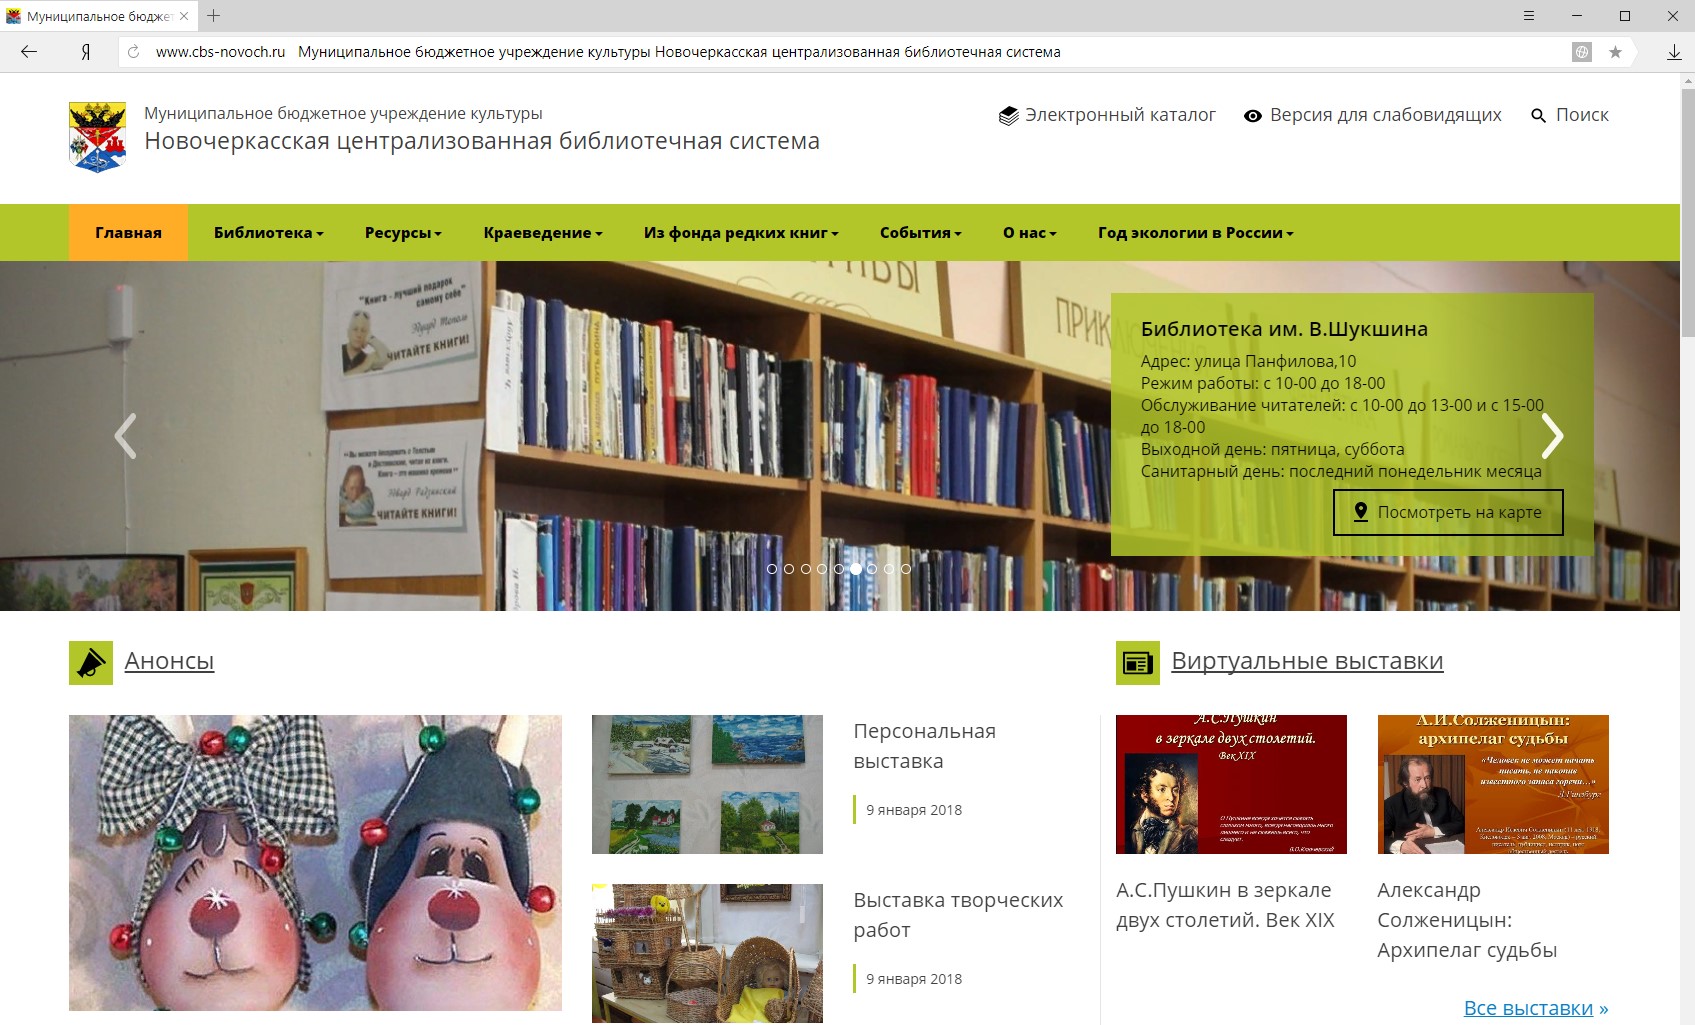 Сbs-novoch.ru - Редизайн сайта Новочеркасской центральной библиотечной системы